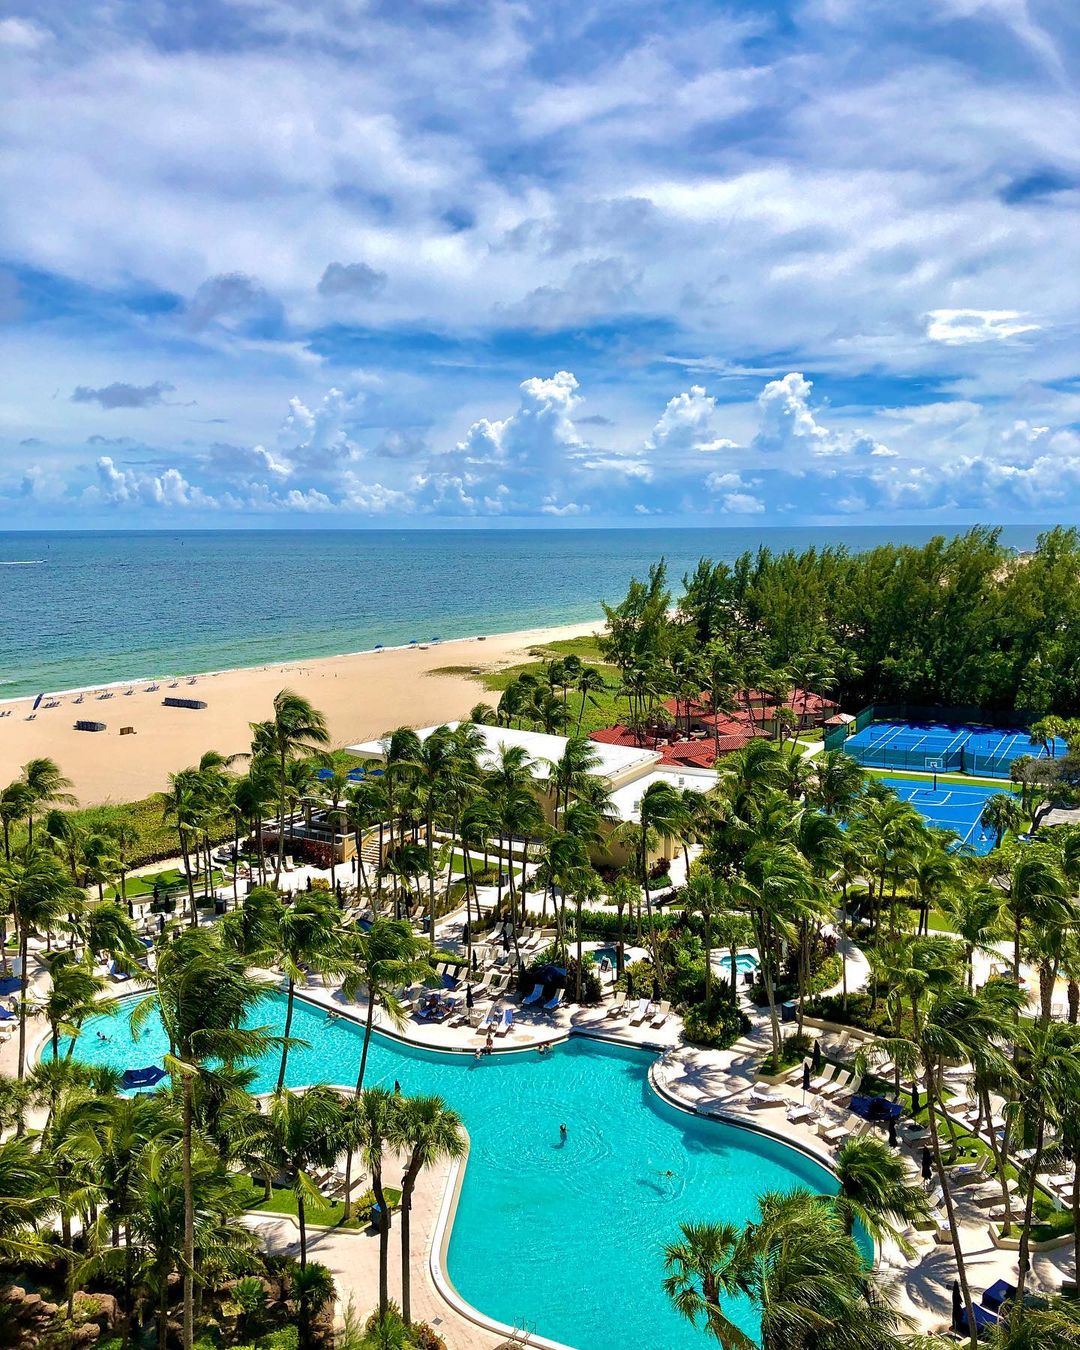 Ocean view of Fort Lauderdale. Photo by Instagram user @fortlauderdalebeach